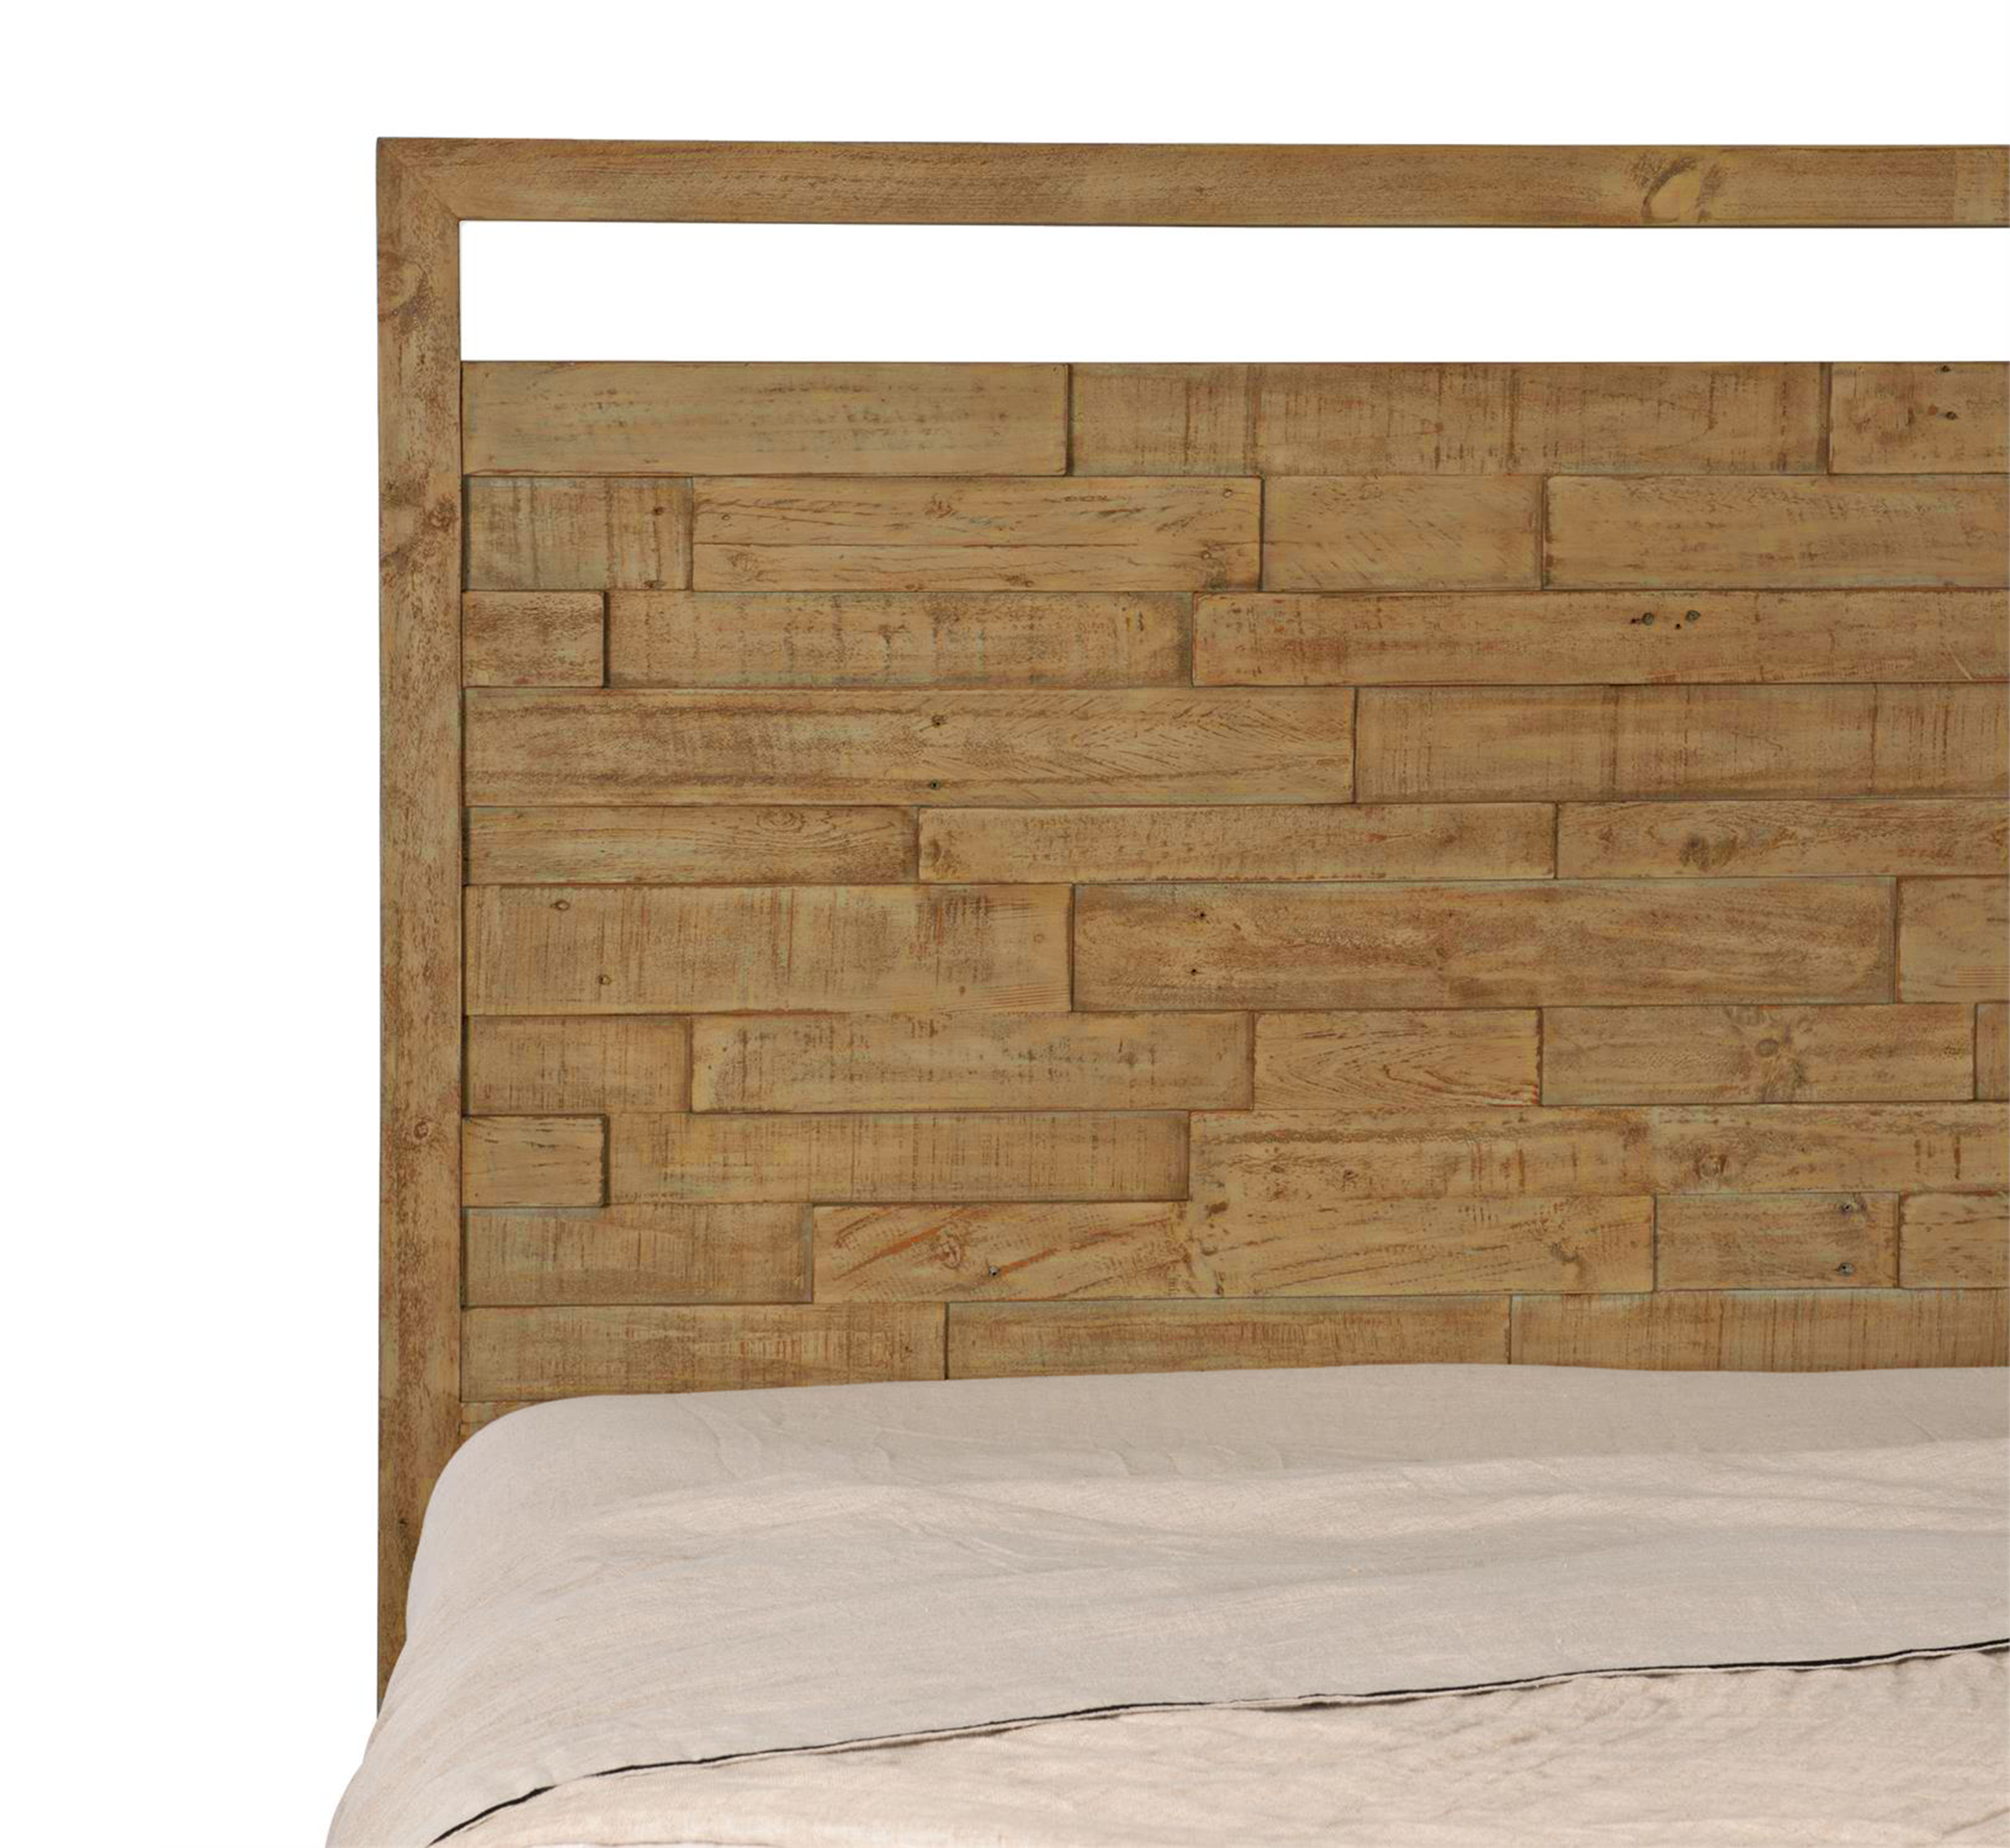 Vyut 100% Solid Wood Bed